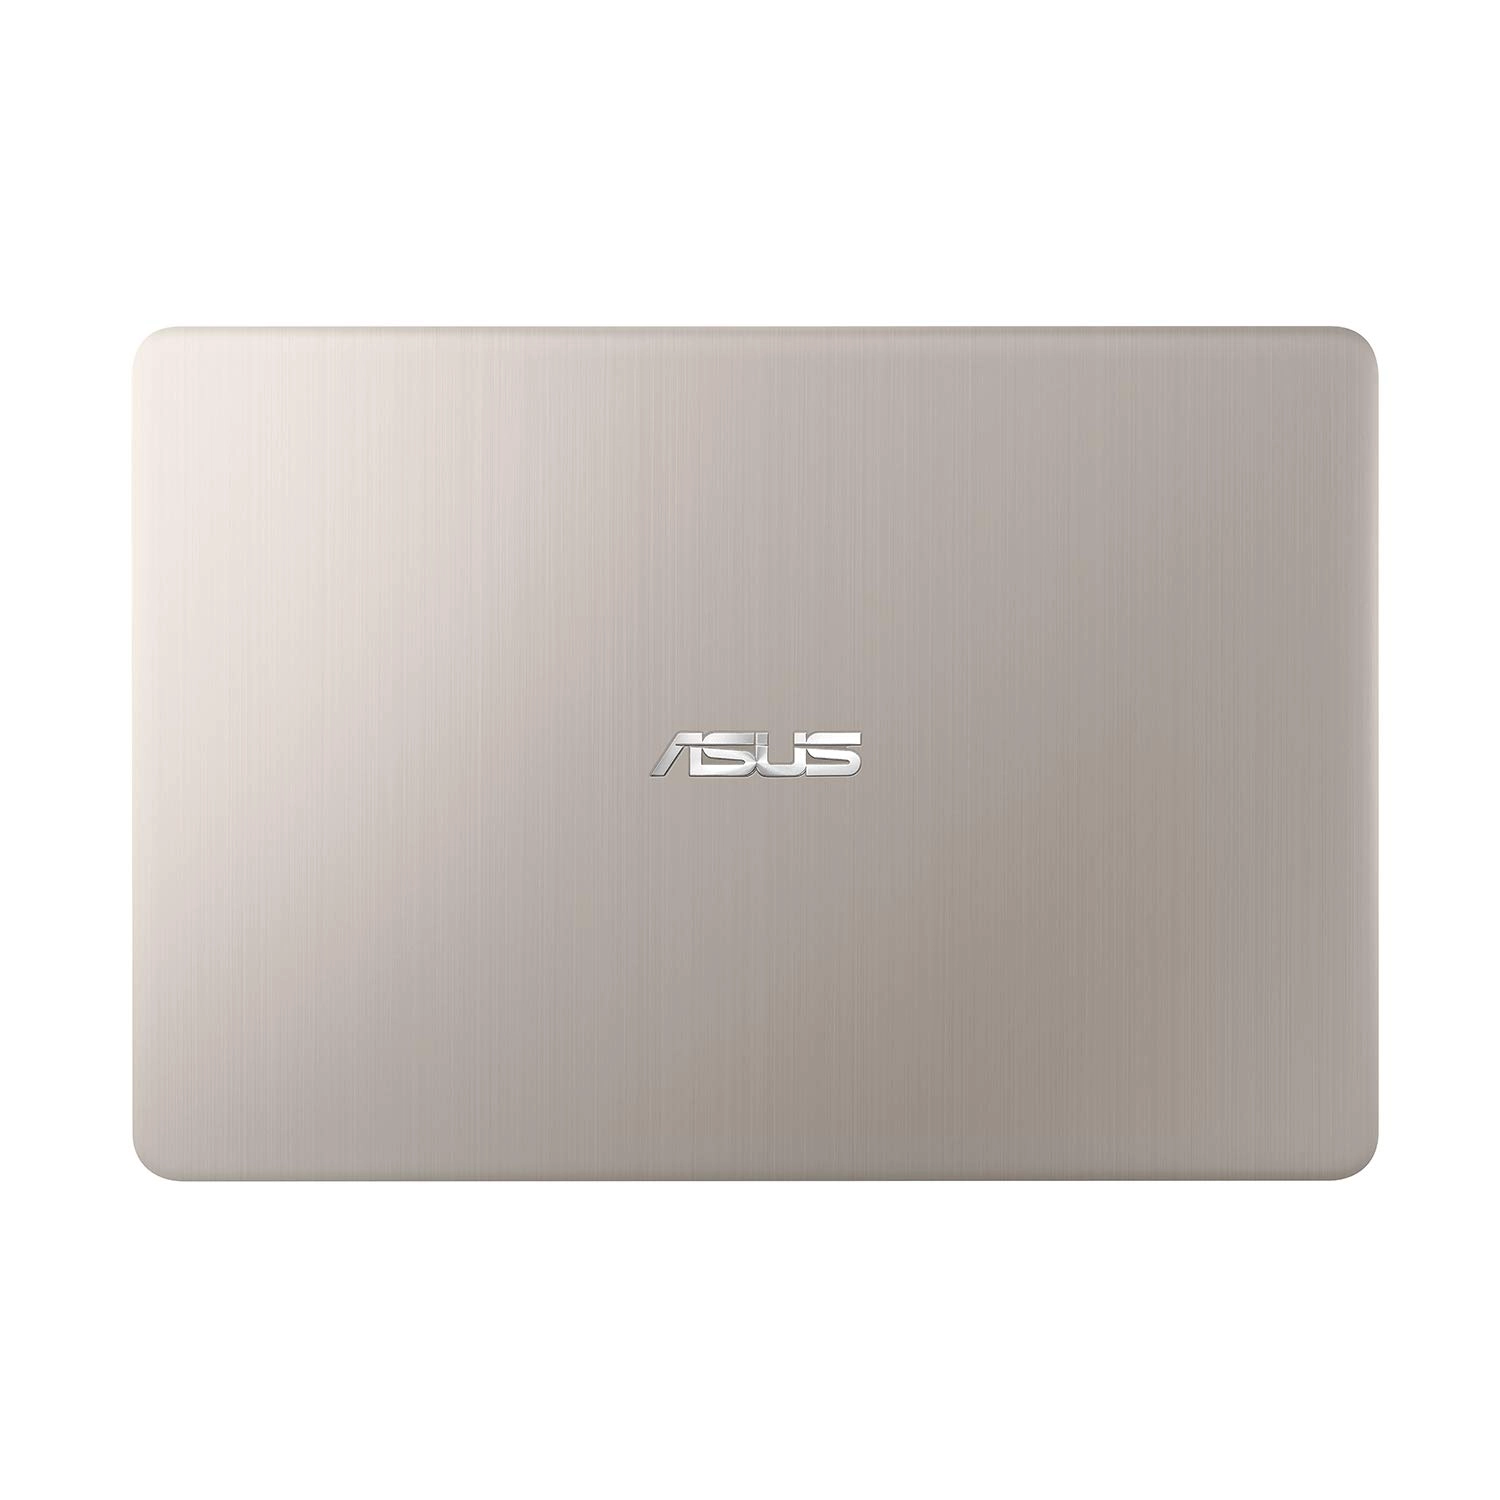 Asus S406UA-BV121T laptop image